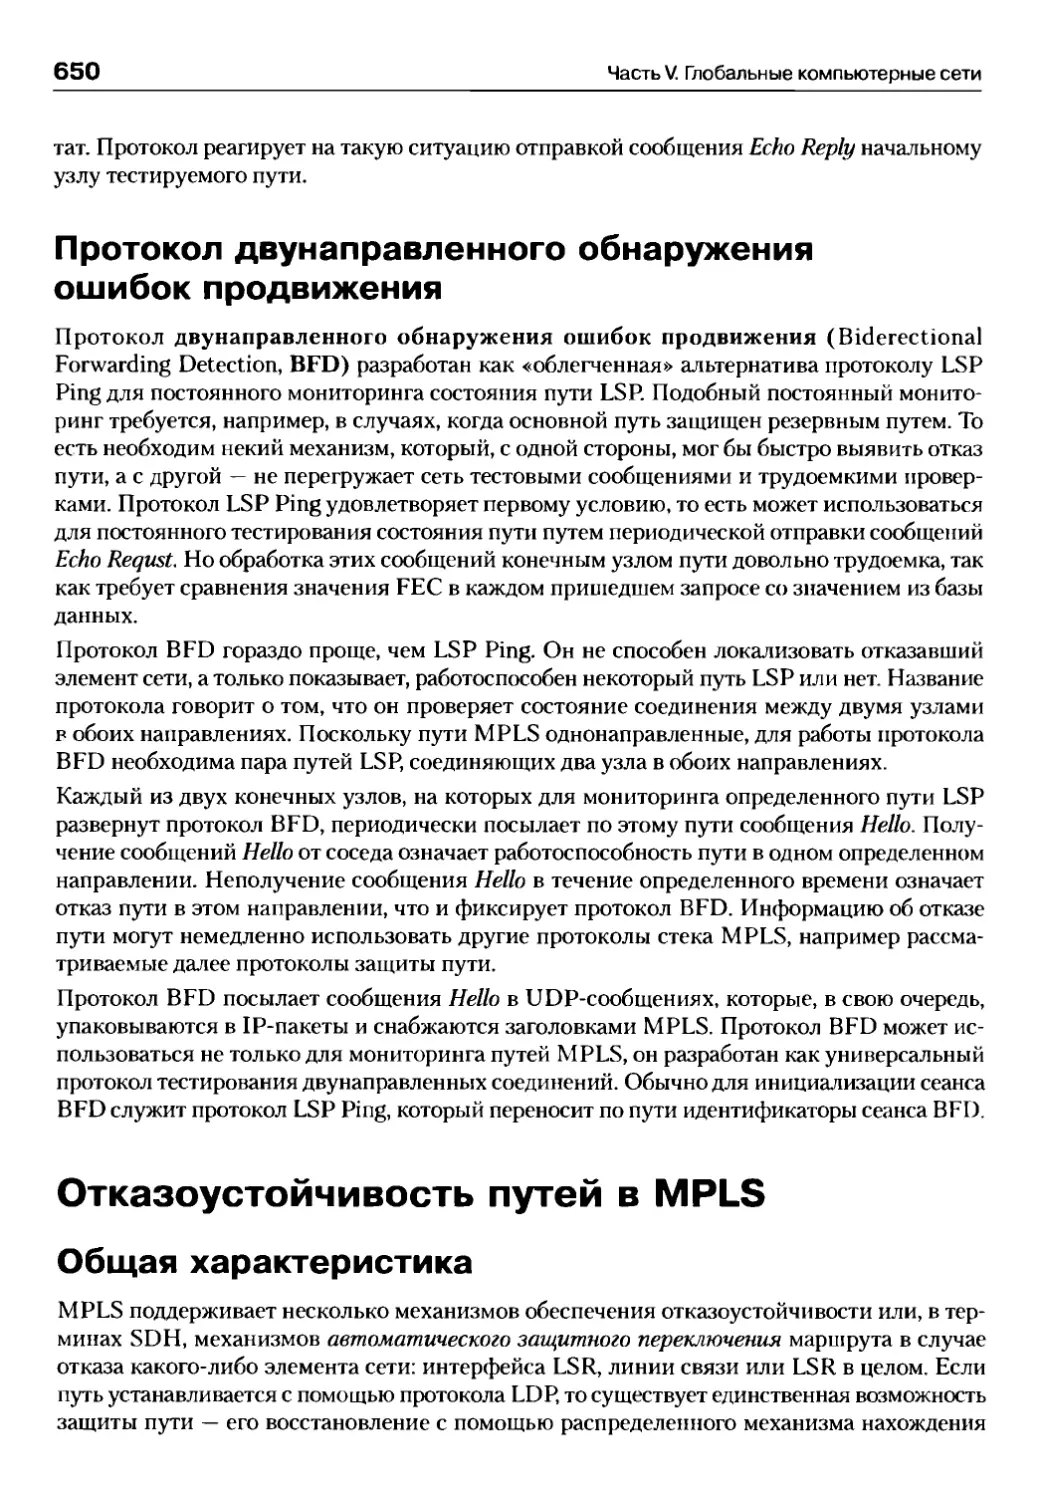 Протокол двунаправленного обнаружения ошибок продвижения
Отказоустойчивость путей в MPLS